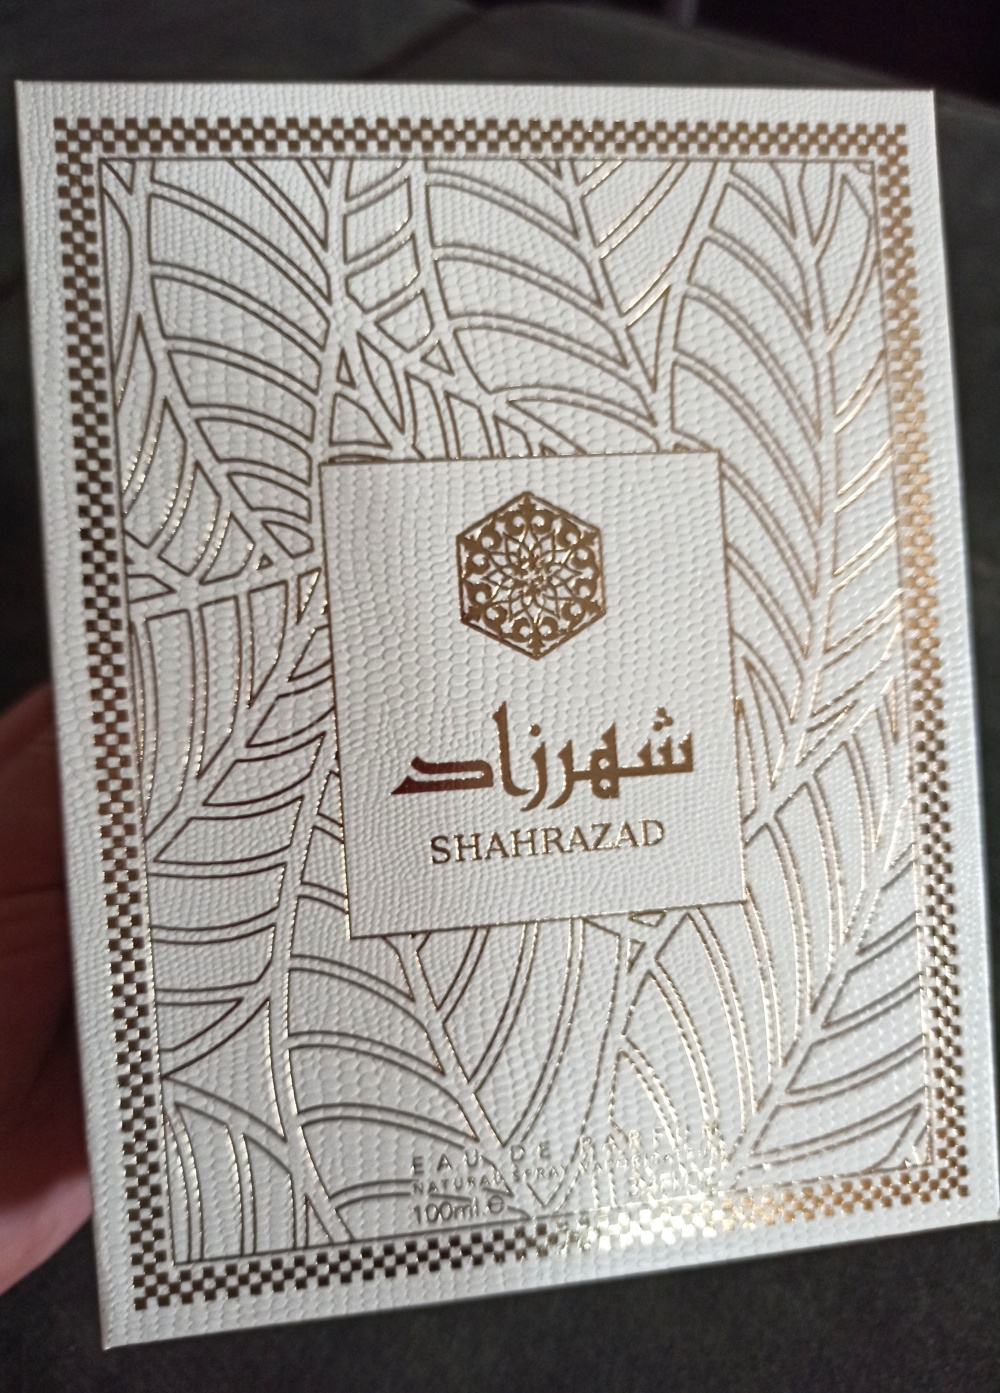 Shahrazad Ard al Zaafaran,edp,от 100 мл